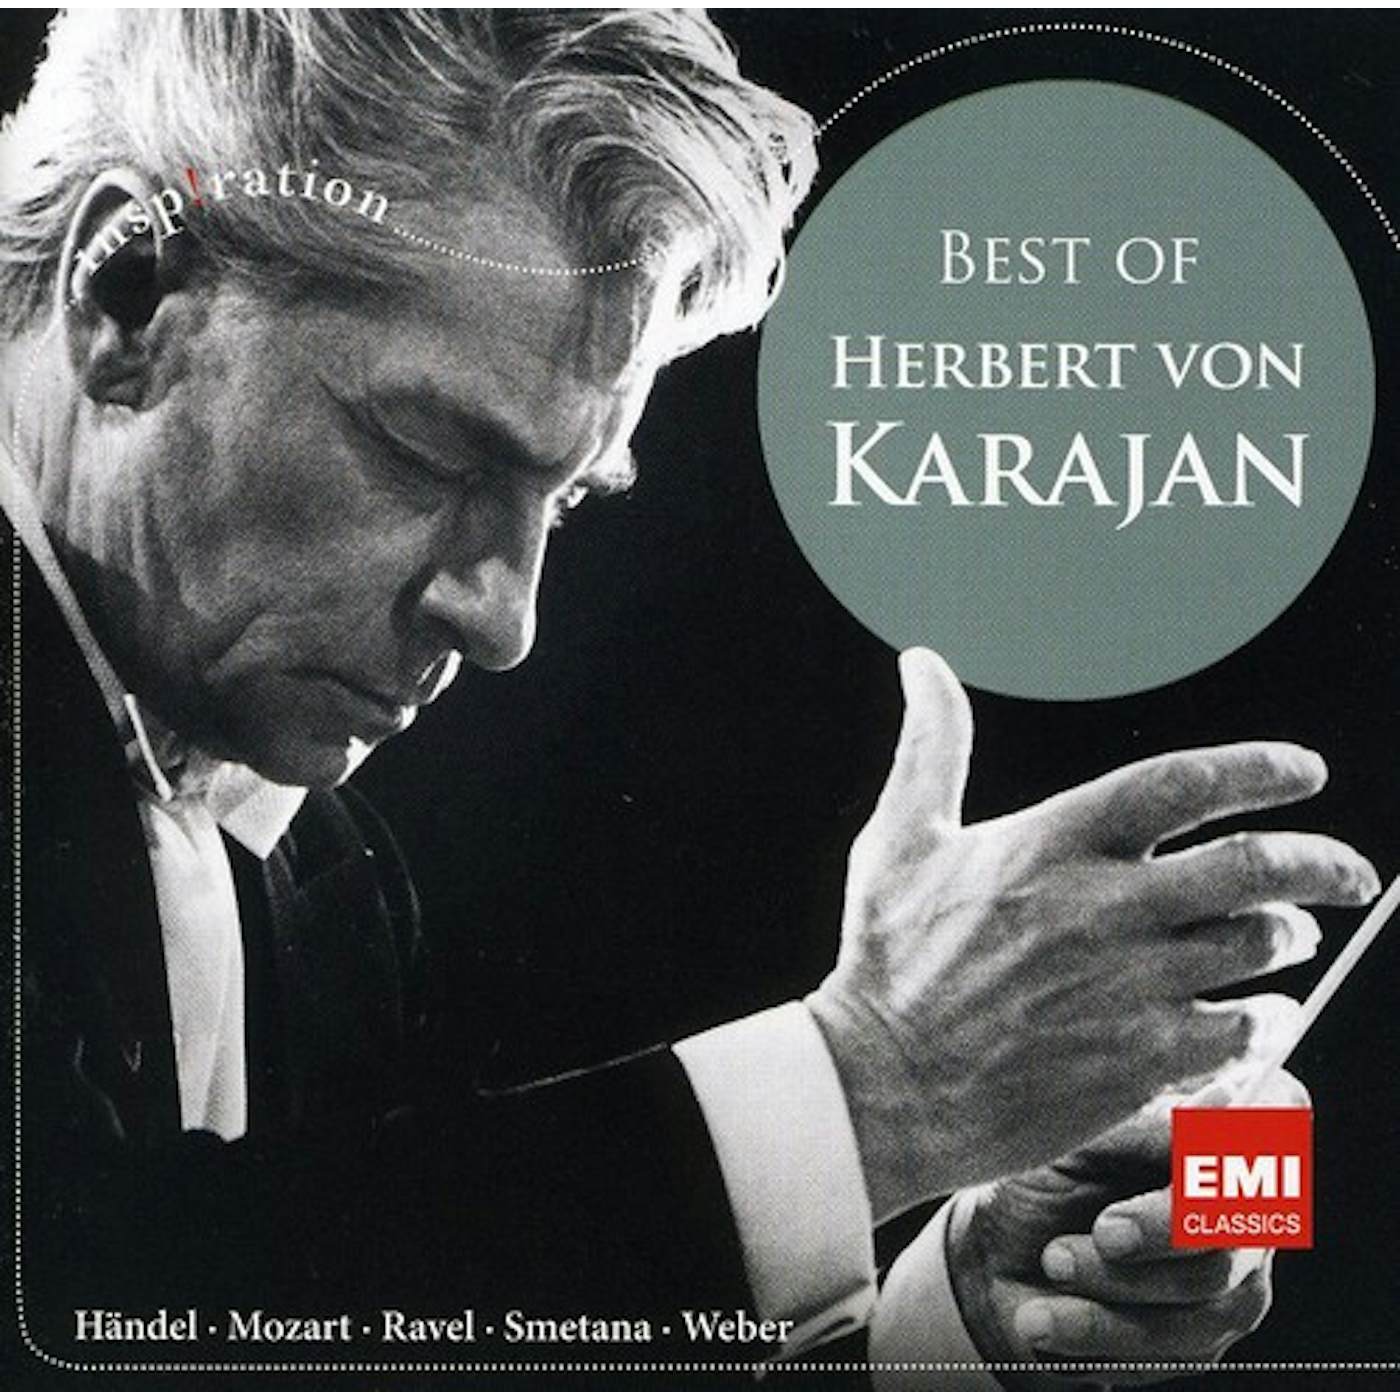 Herbert von Karajan BEST OF CD